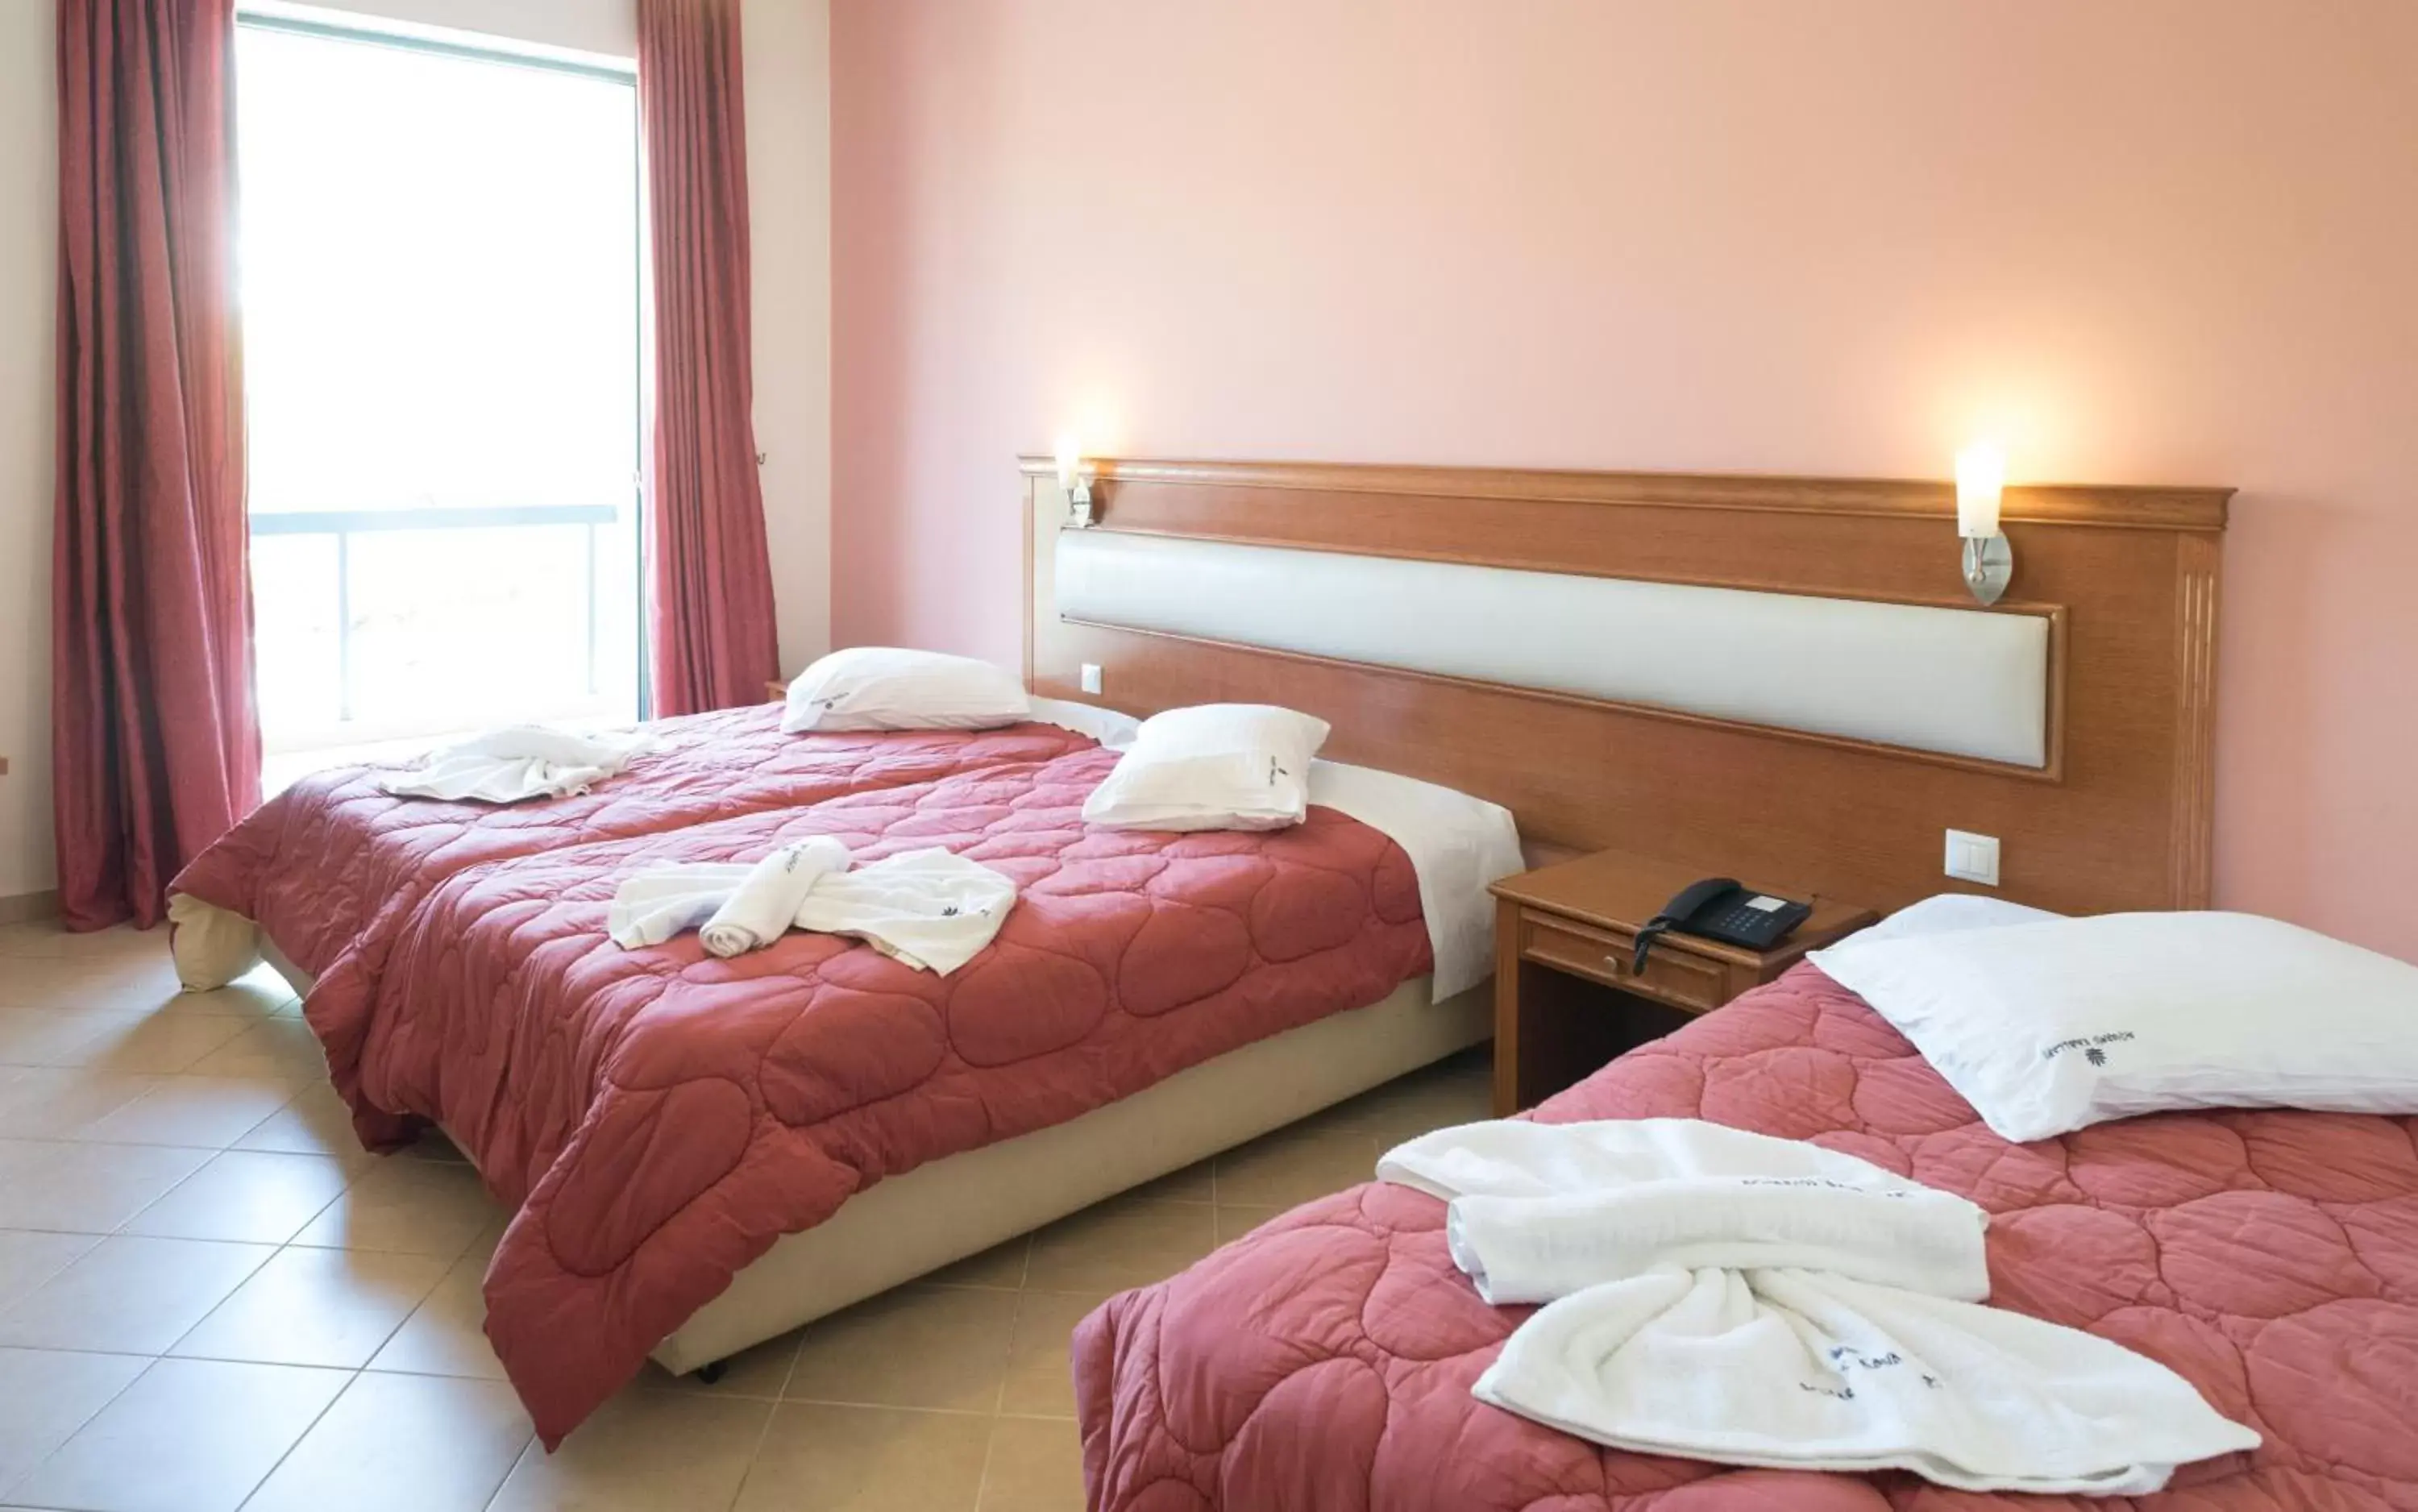 Room Photo in Acharnis Kavallari Hotel Suites